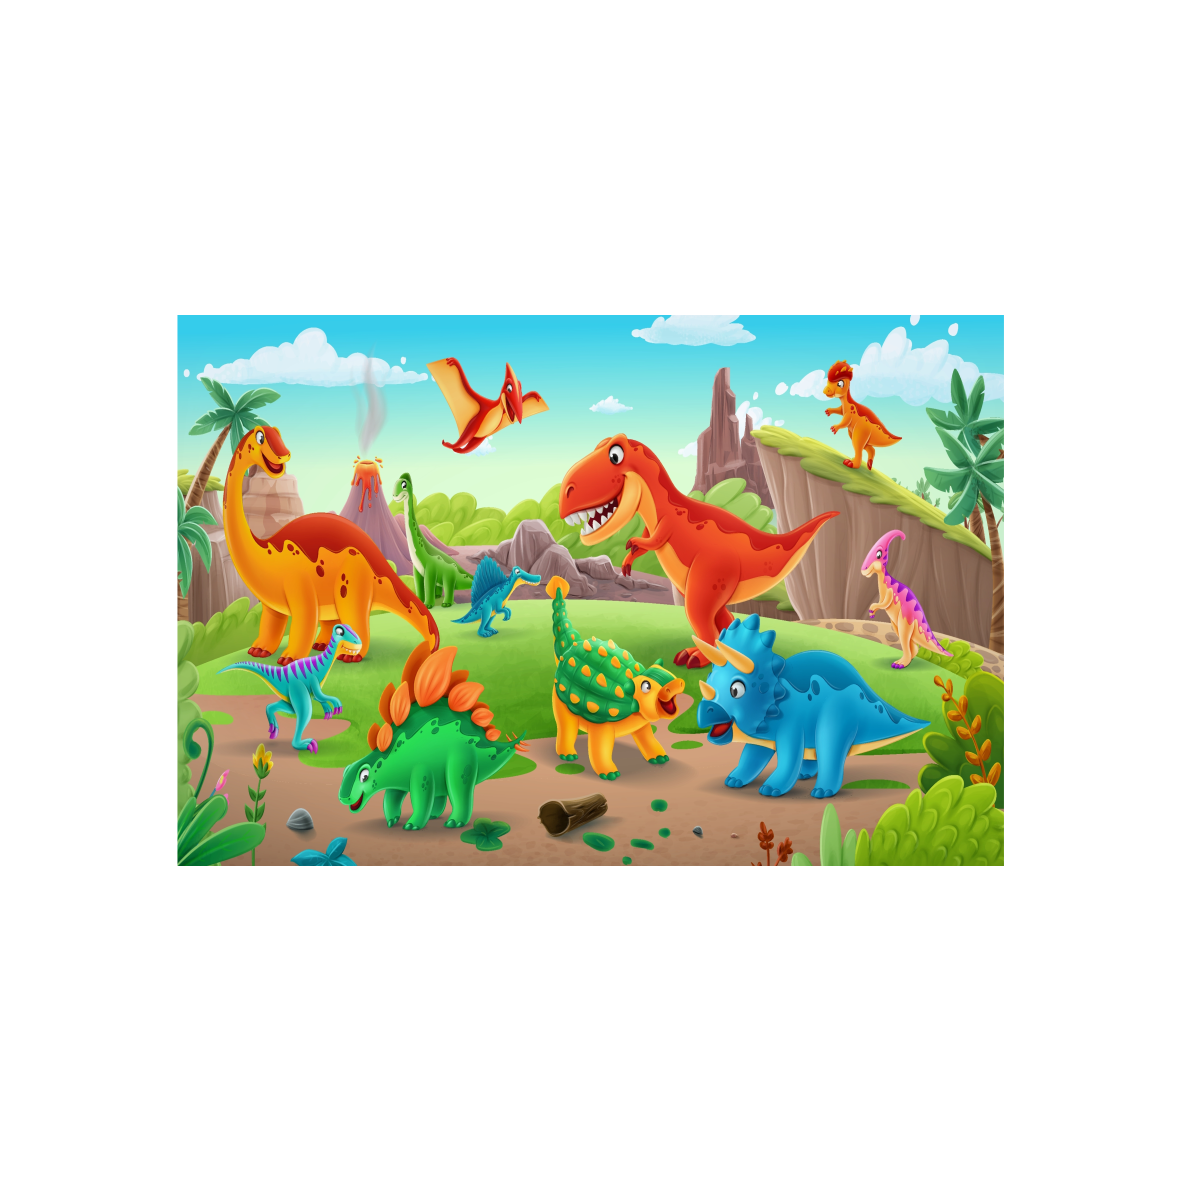 Desenhos de Dinossauro - Como desenhar Dinossauro passo a passo